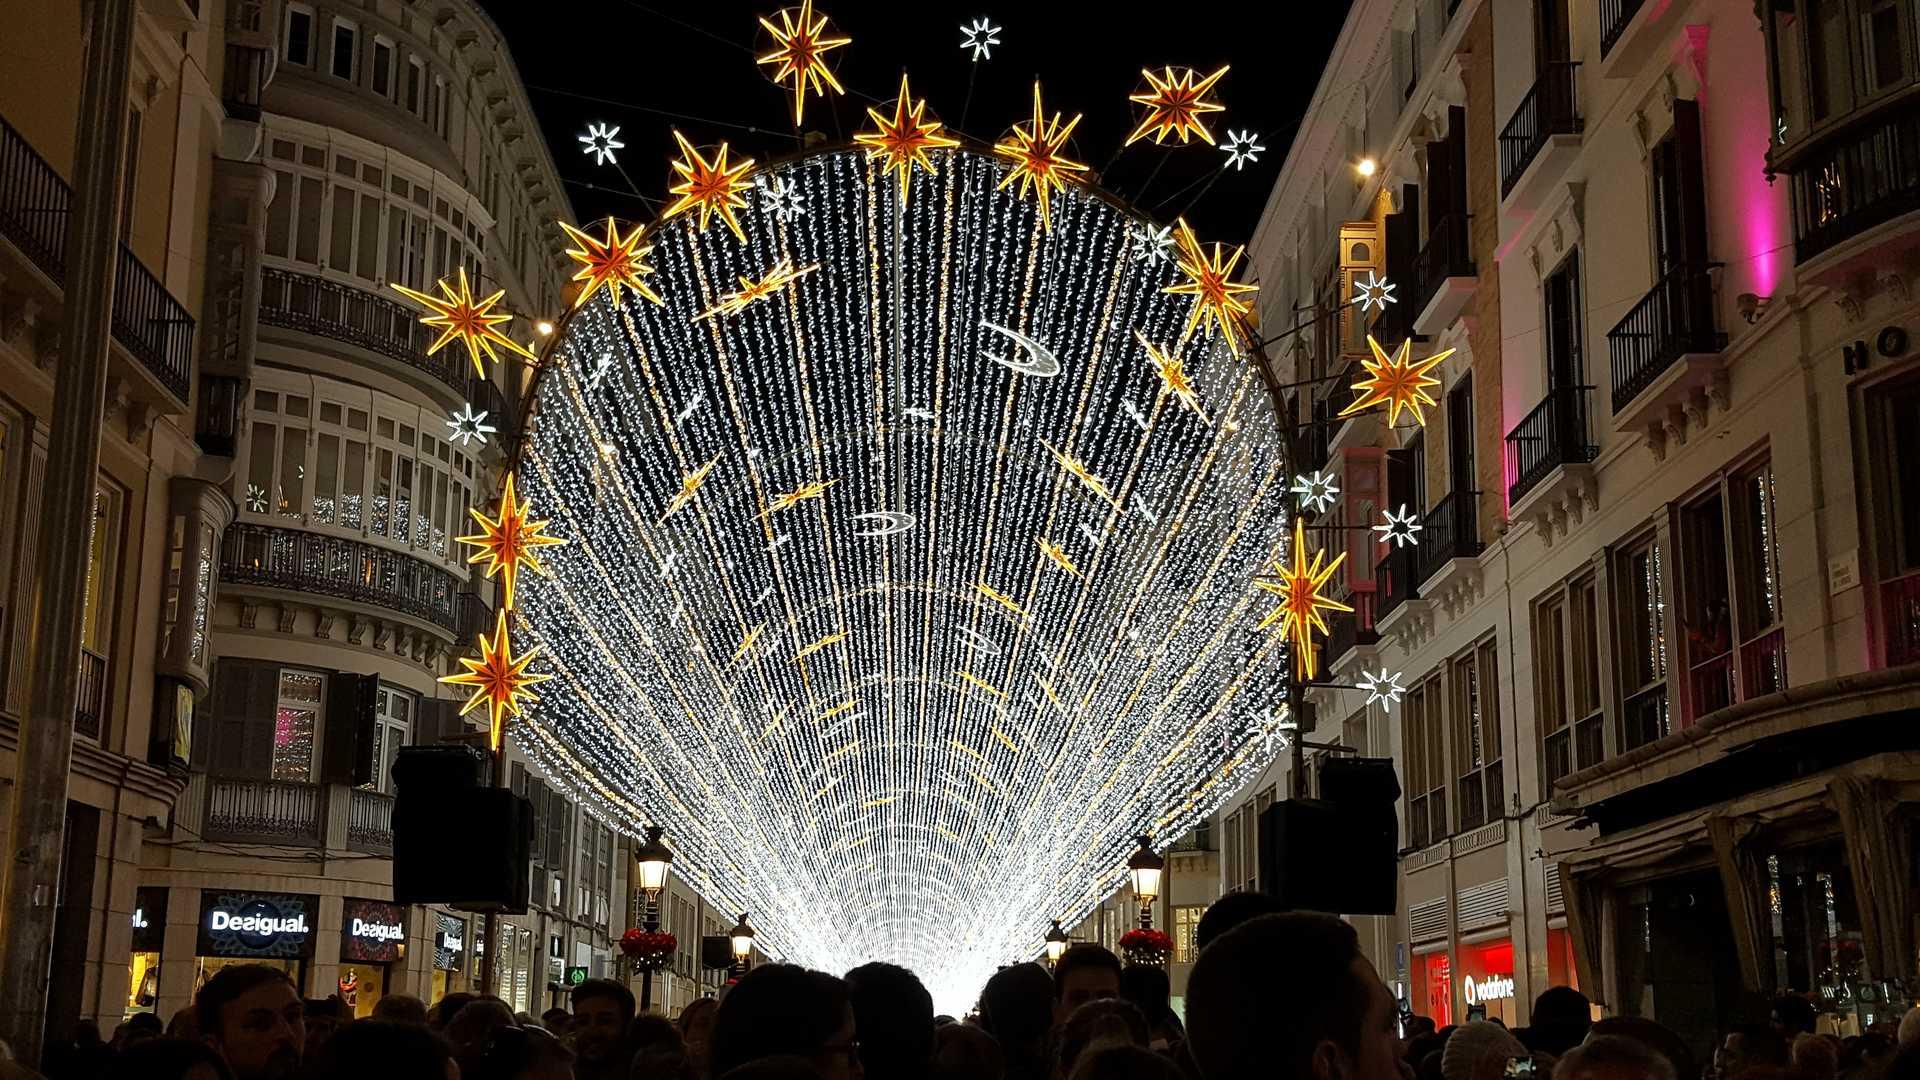 Weihnachtliche Lichter in Andalusien: Termine des traditionellen Einschaltens der Weihnachtsbeleuchtung